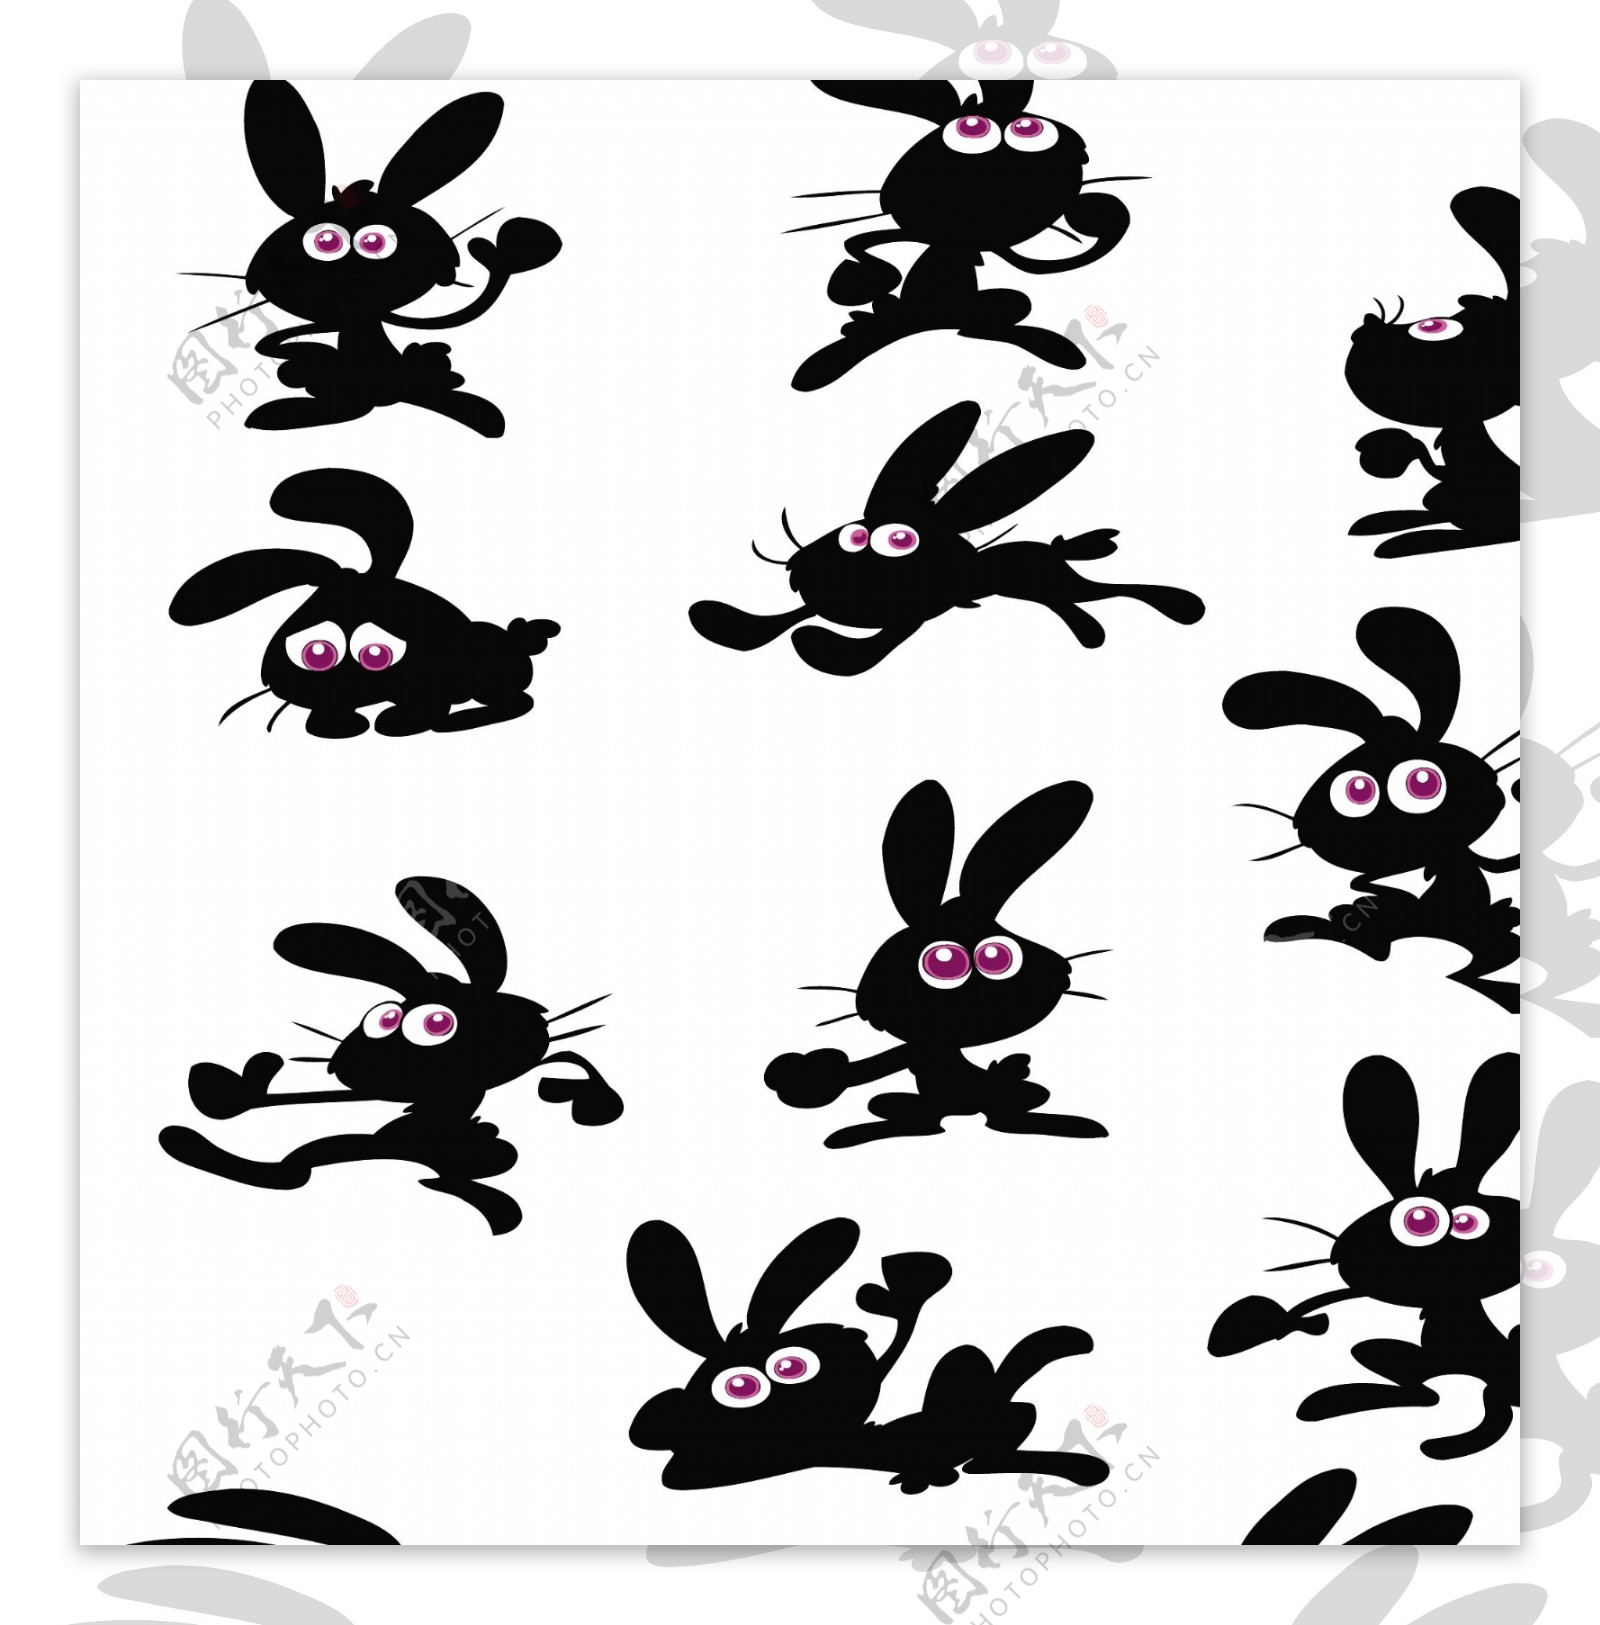 可爱卡通兔子矢量素材